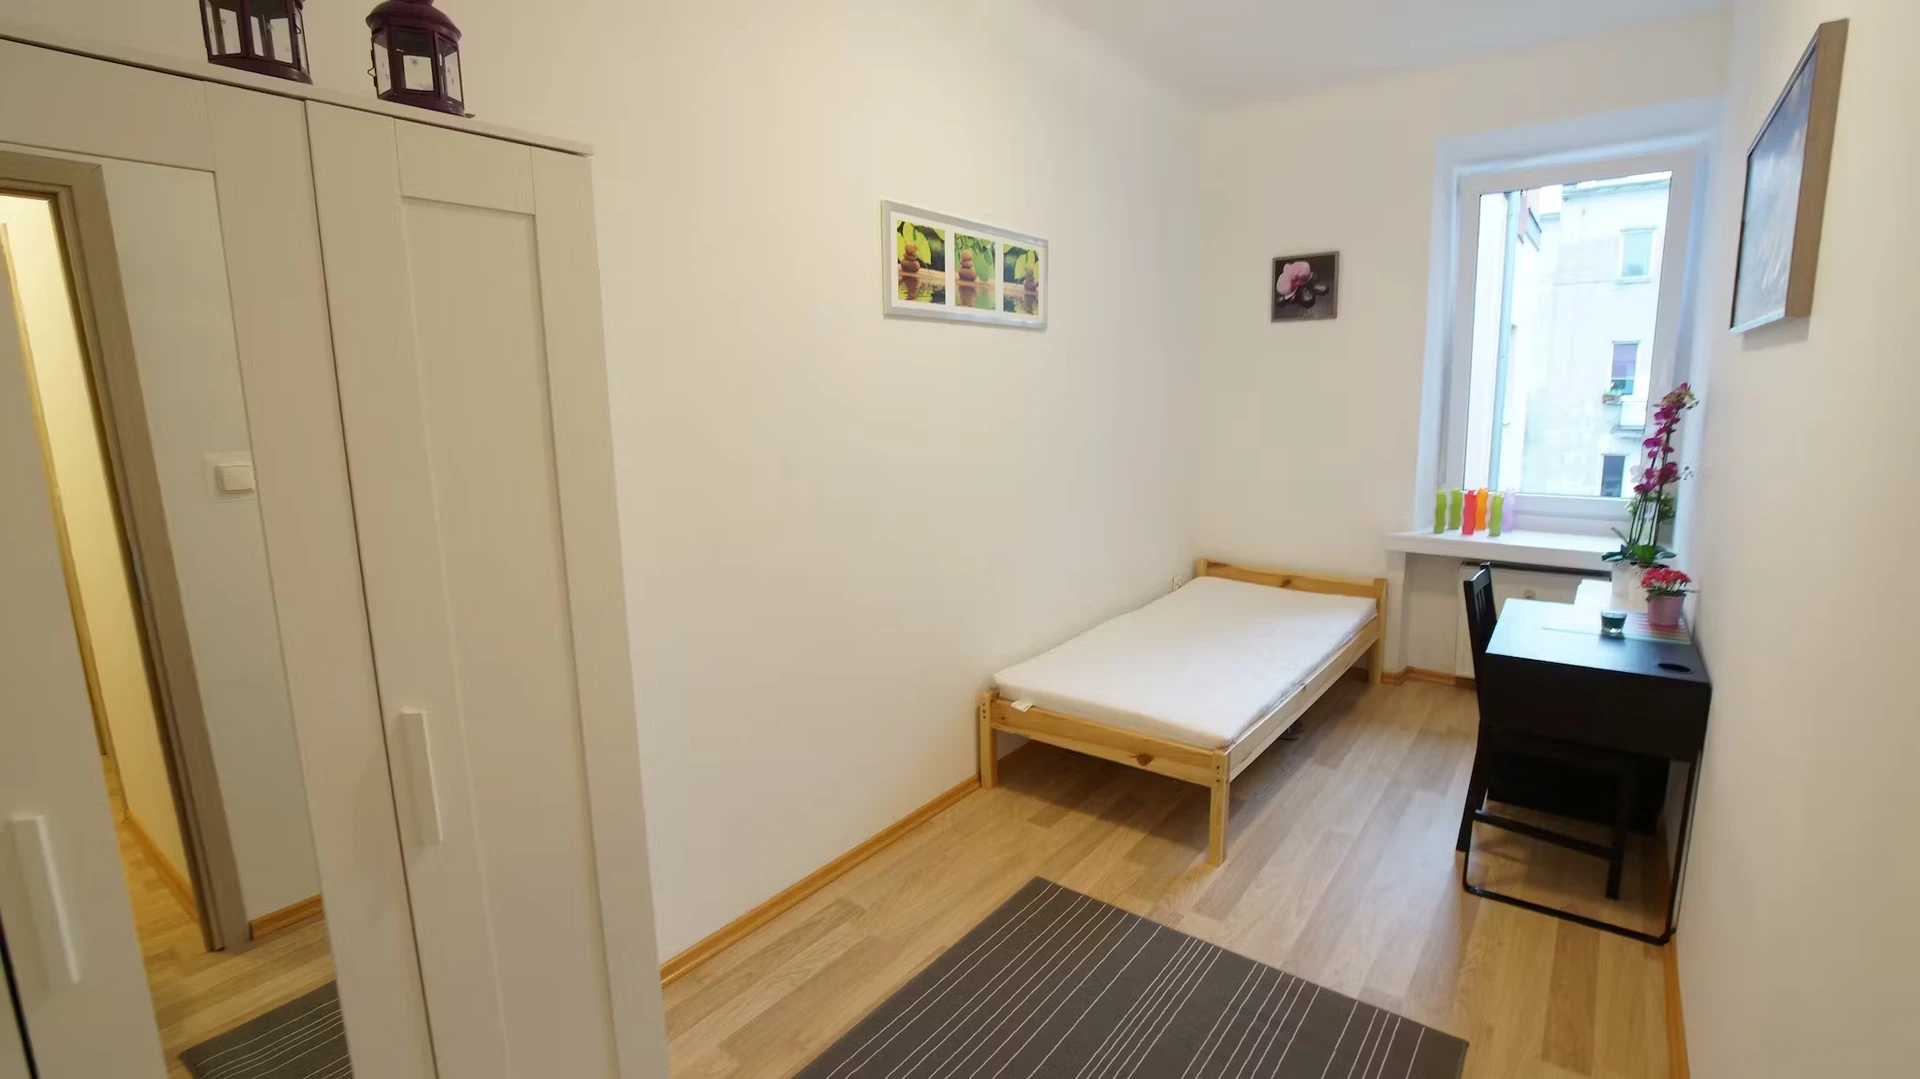 Alquiler de habitación en piso compartido en Lodz